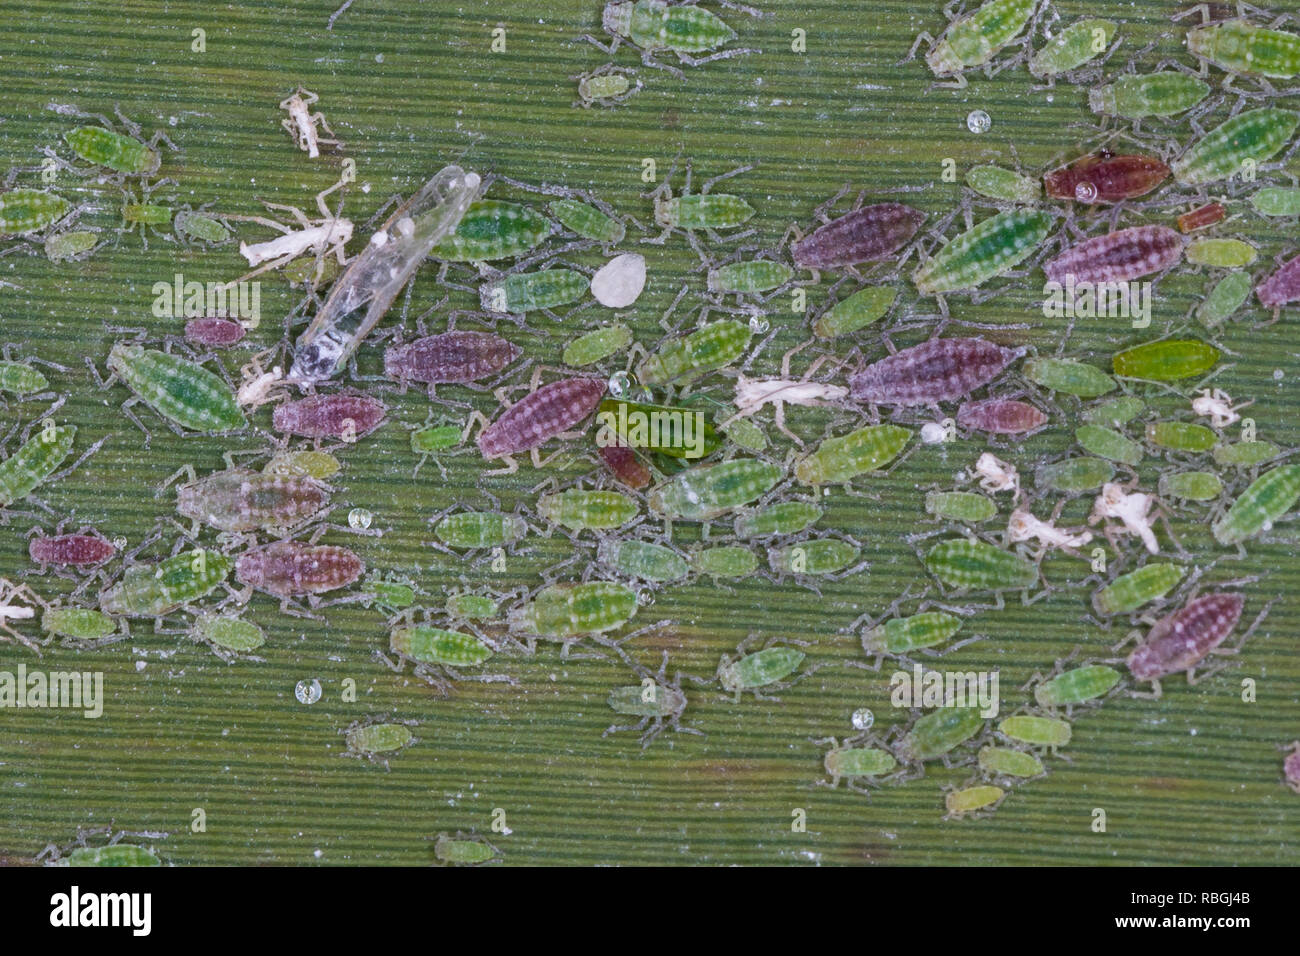 Mehlige Pflaumenblattlaus, Mehlige, Pflaumen-Blattlaus Hyalopterus pruni, mehlige Plum gegen Blattläuse, rote und grüne Phasen, verschiedenen Altersgruppen in Sch Stockfoto